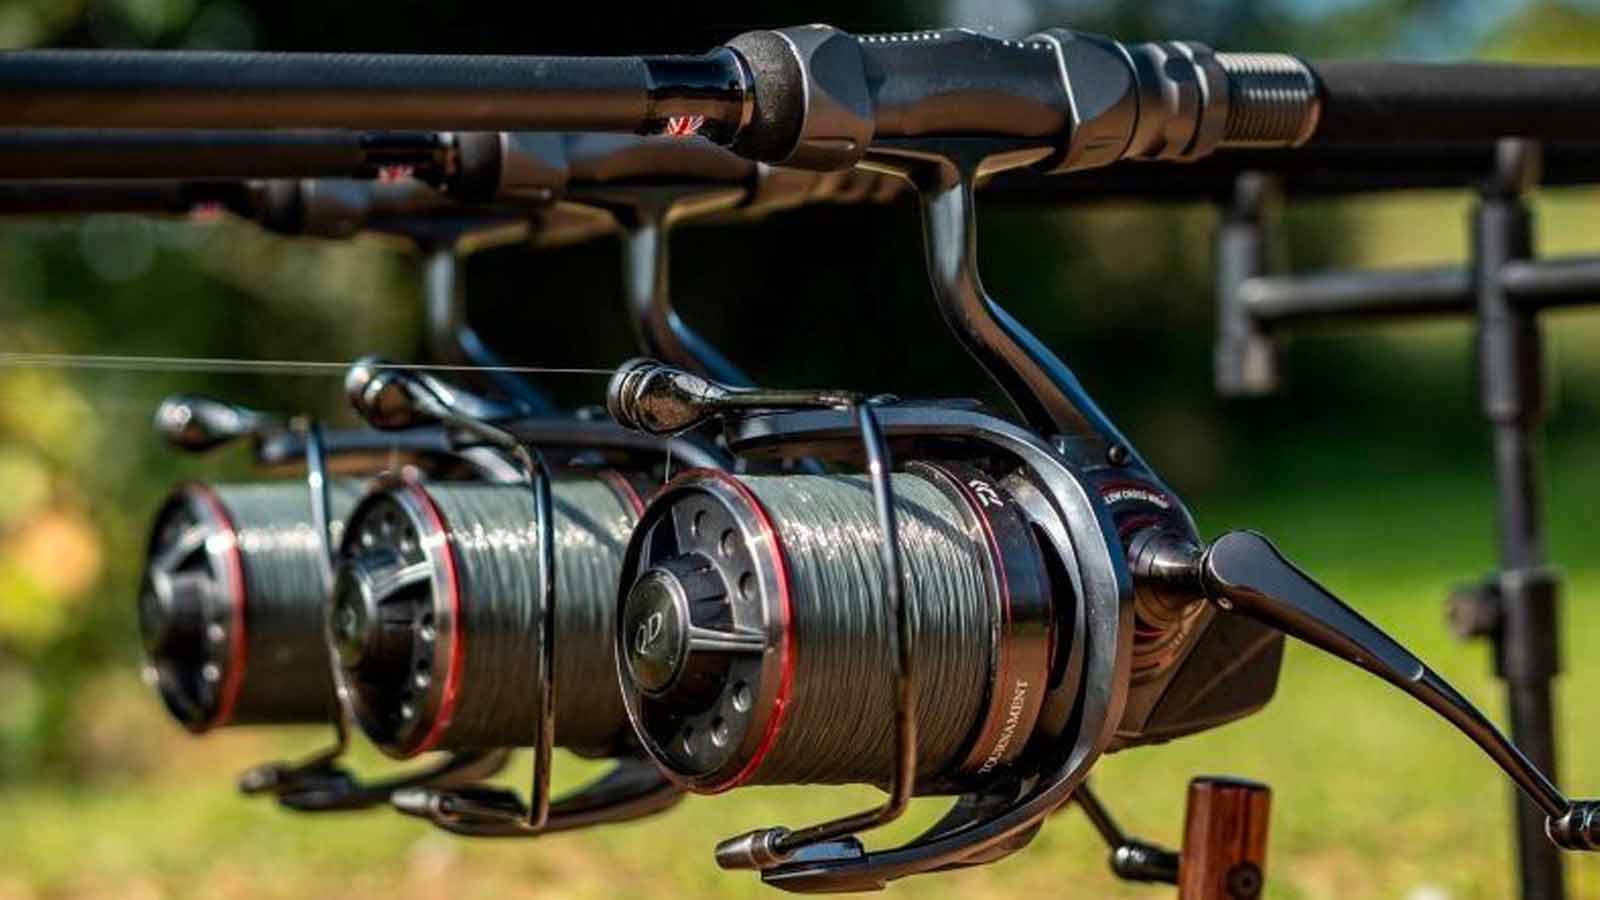   Carp Gear Bundle: Fishing Gear + £15,000